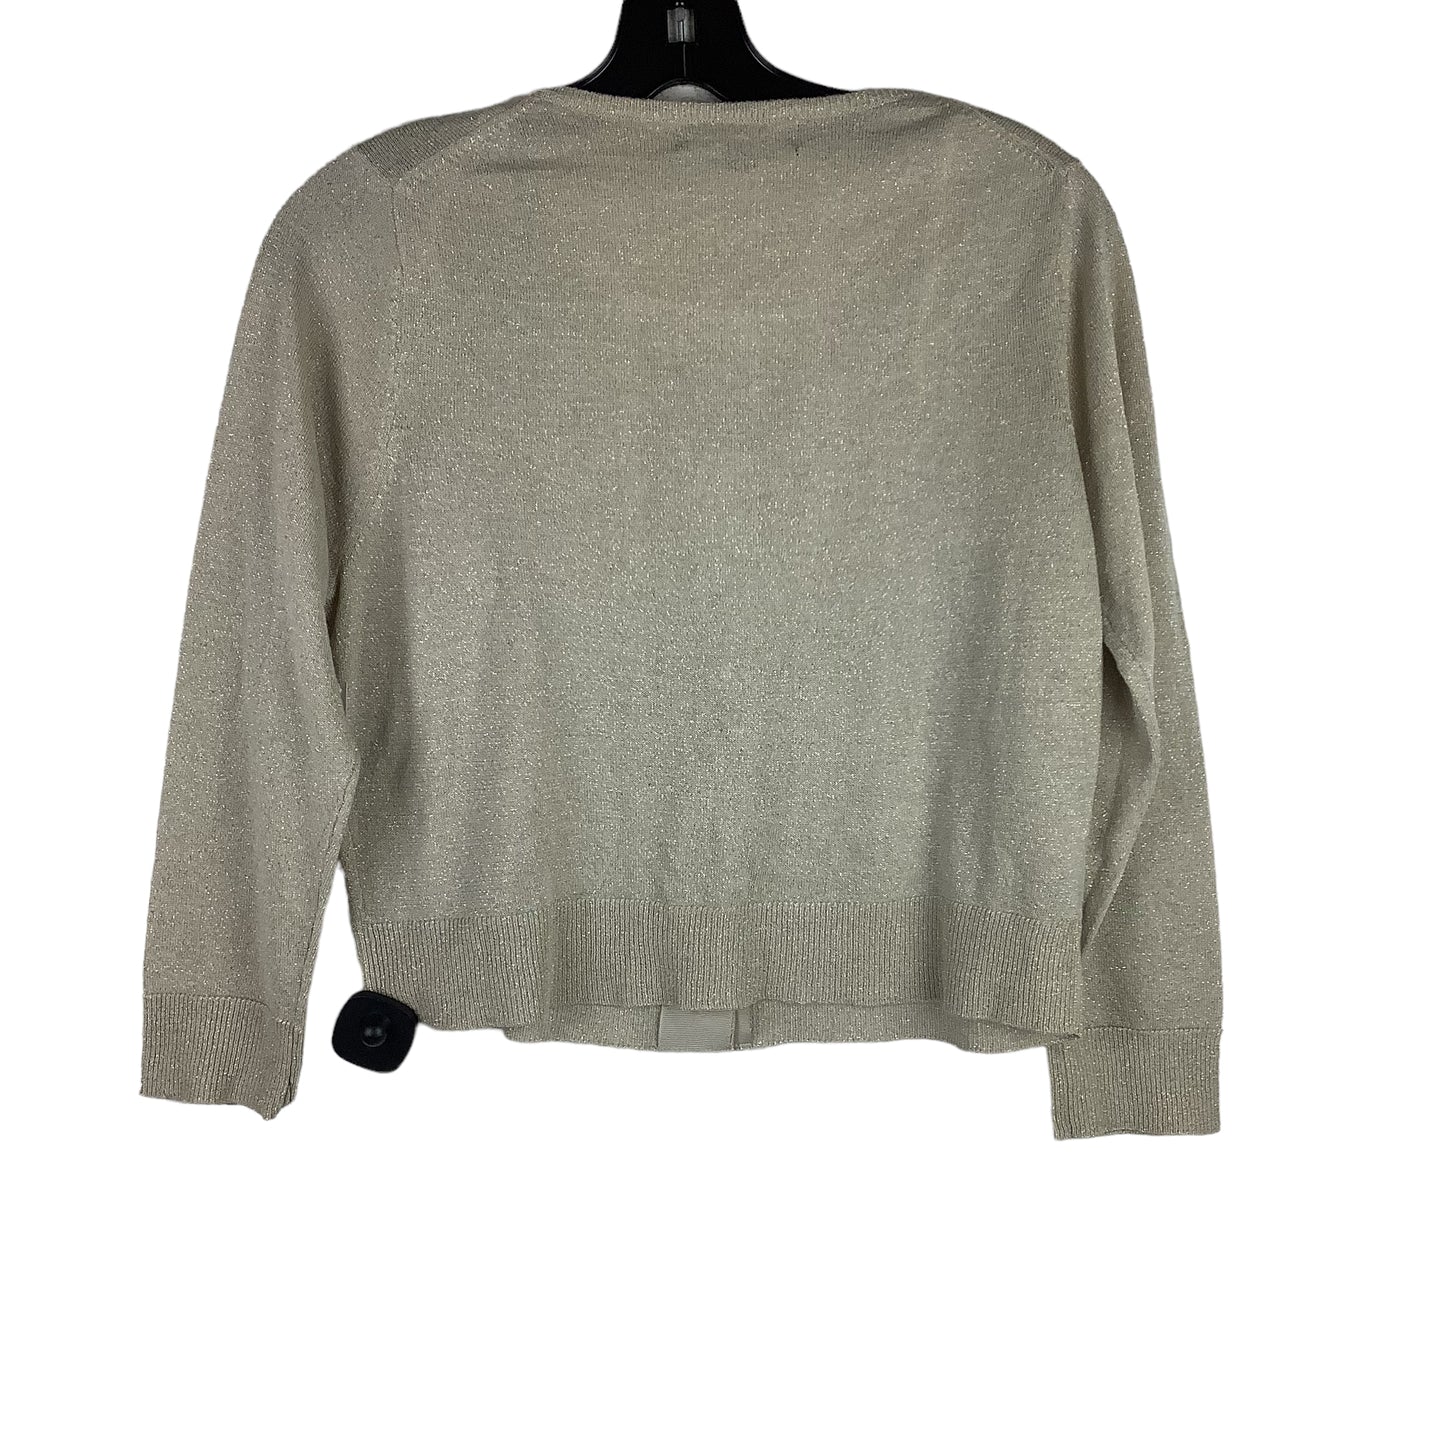 Sweater Cardigan By Ellen Tracy  Size: L